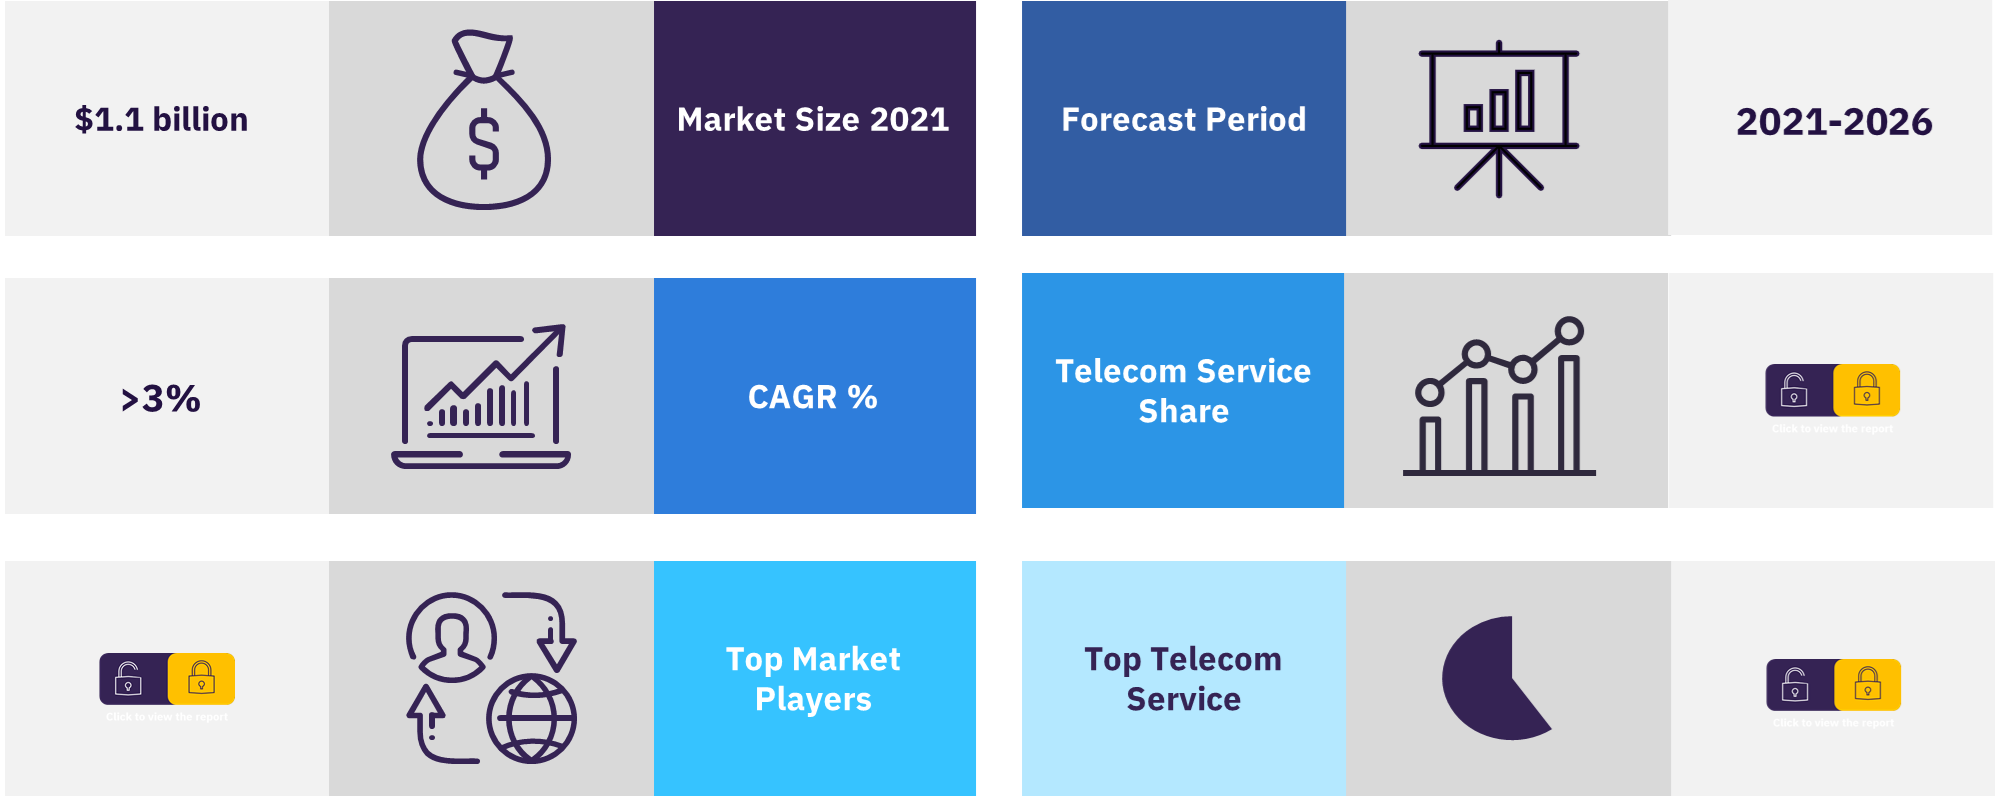 Mali telecommunication market overview